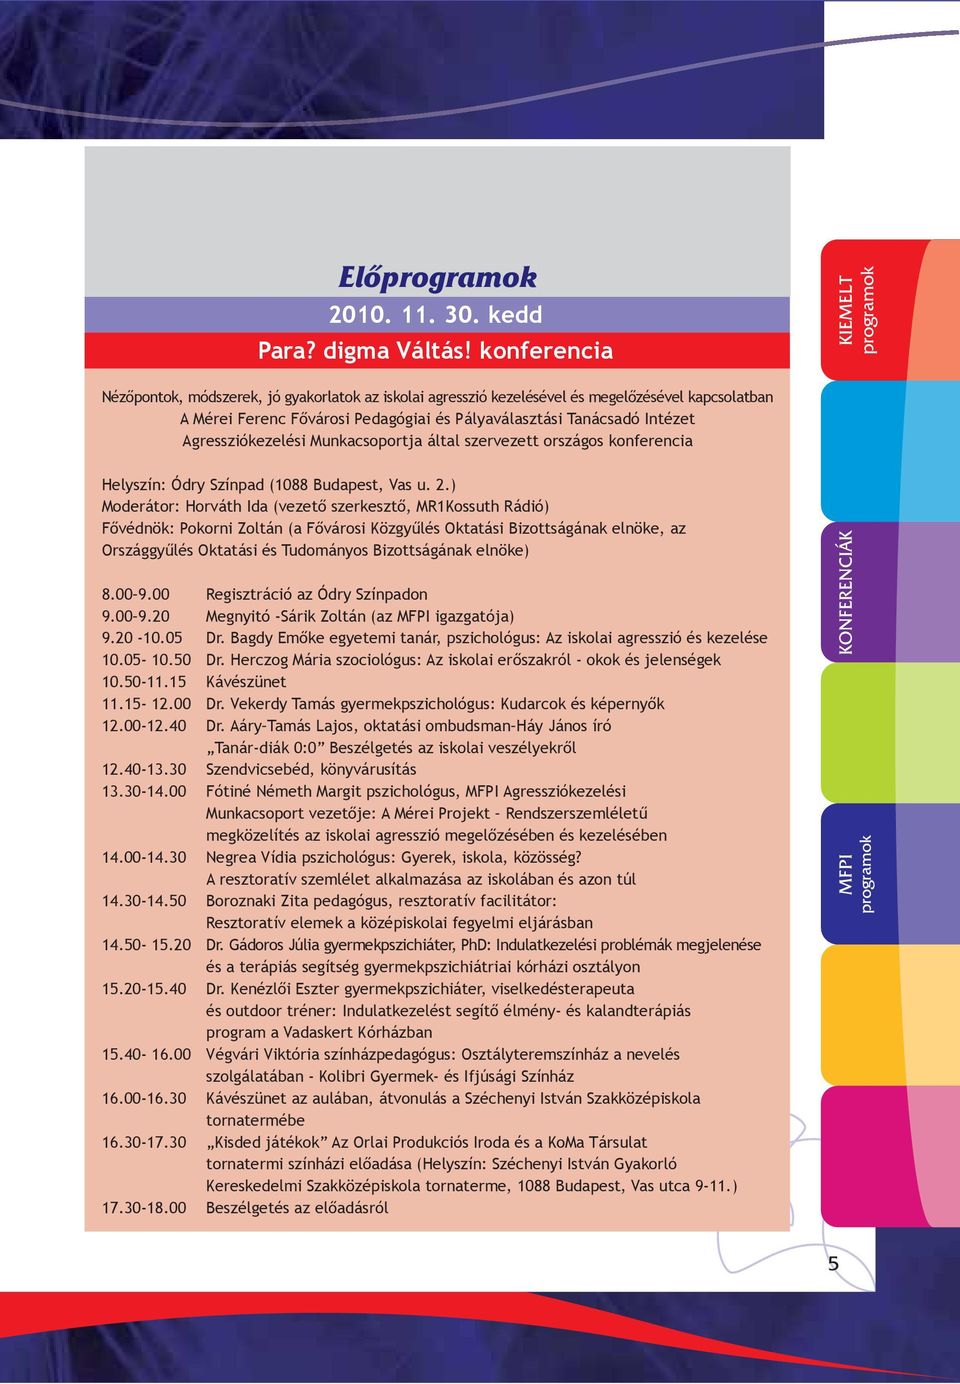 Agressziókezelési Munkacsoportja által szervezett országos konferencia Helyszín: Ódry Színpad (1088 Budapest, Vas u. 2.